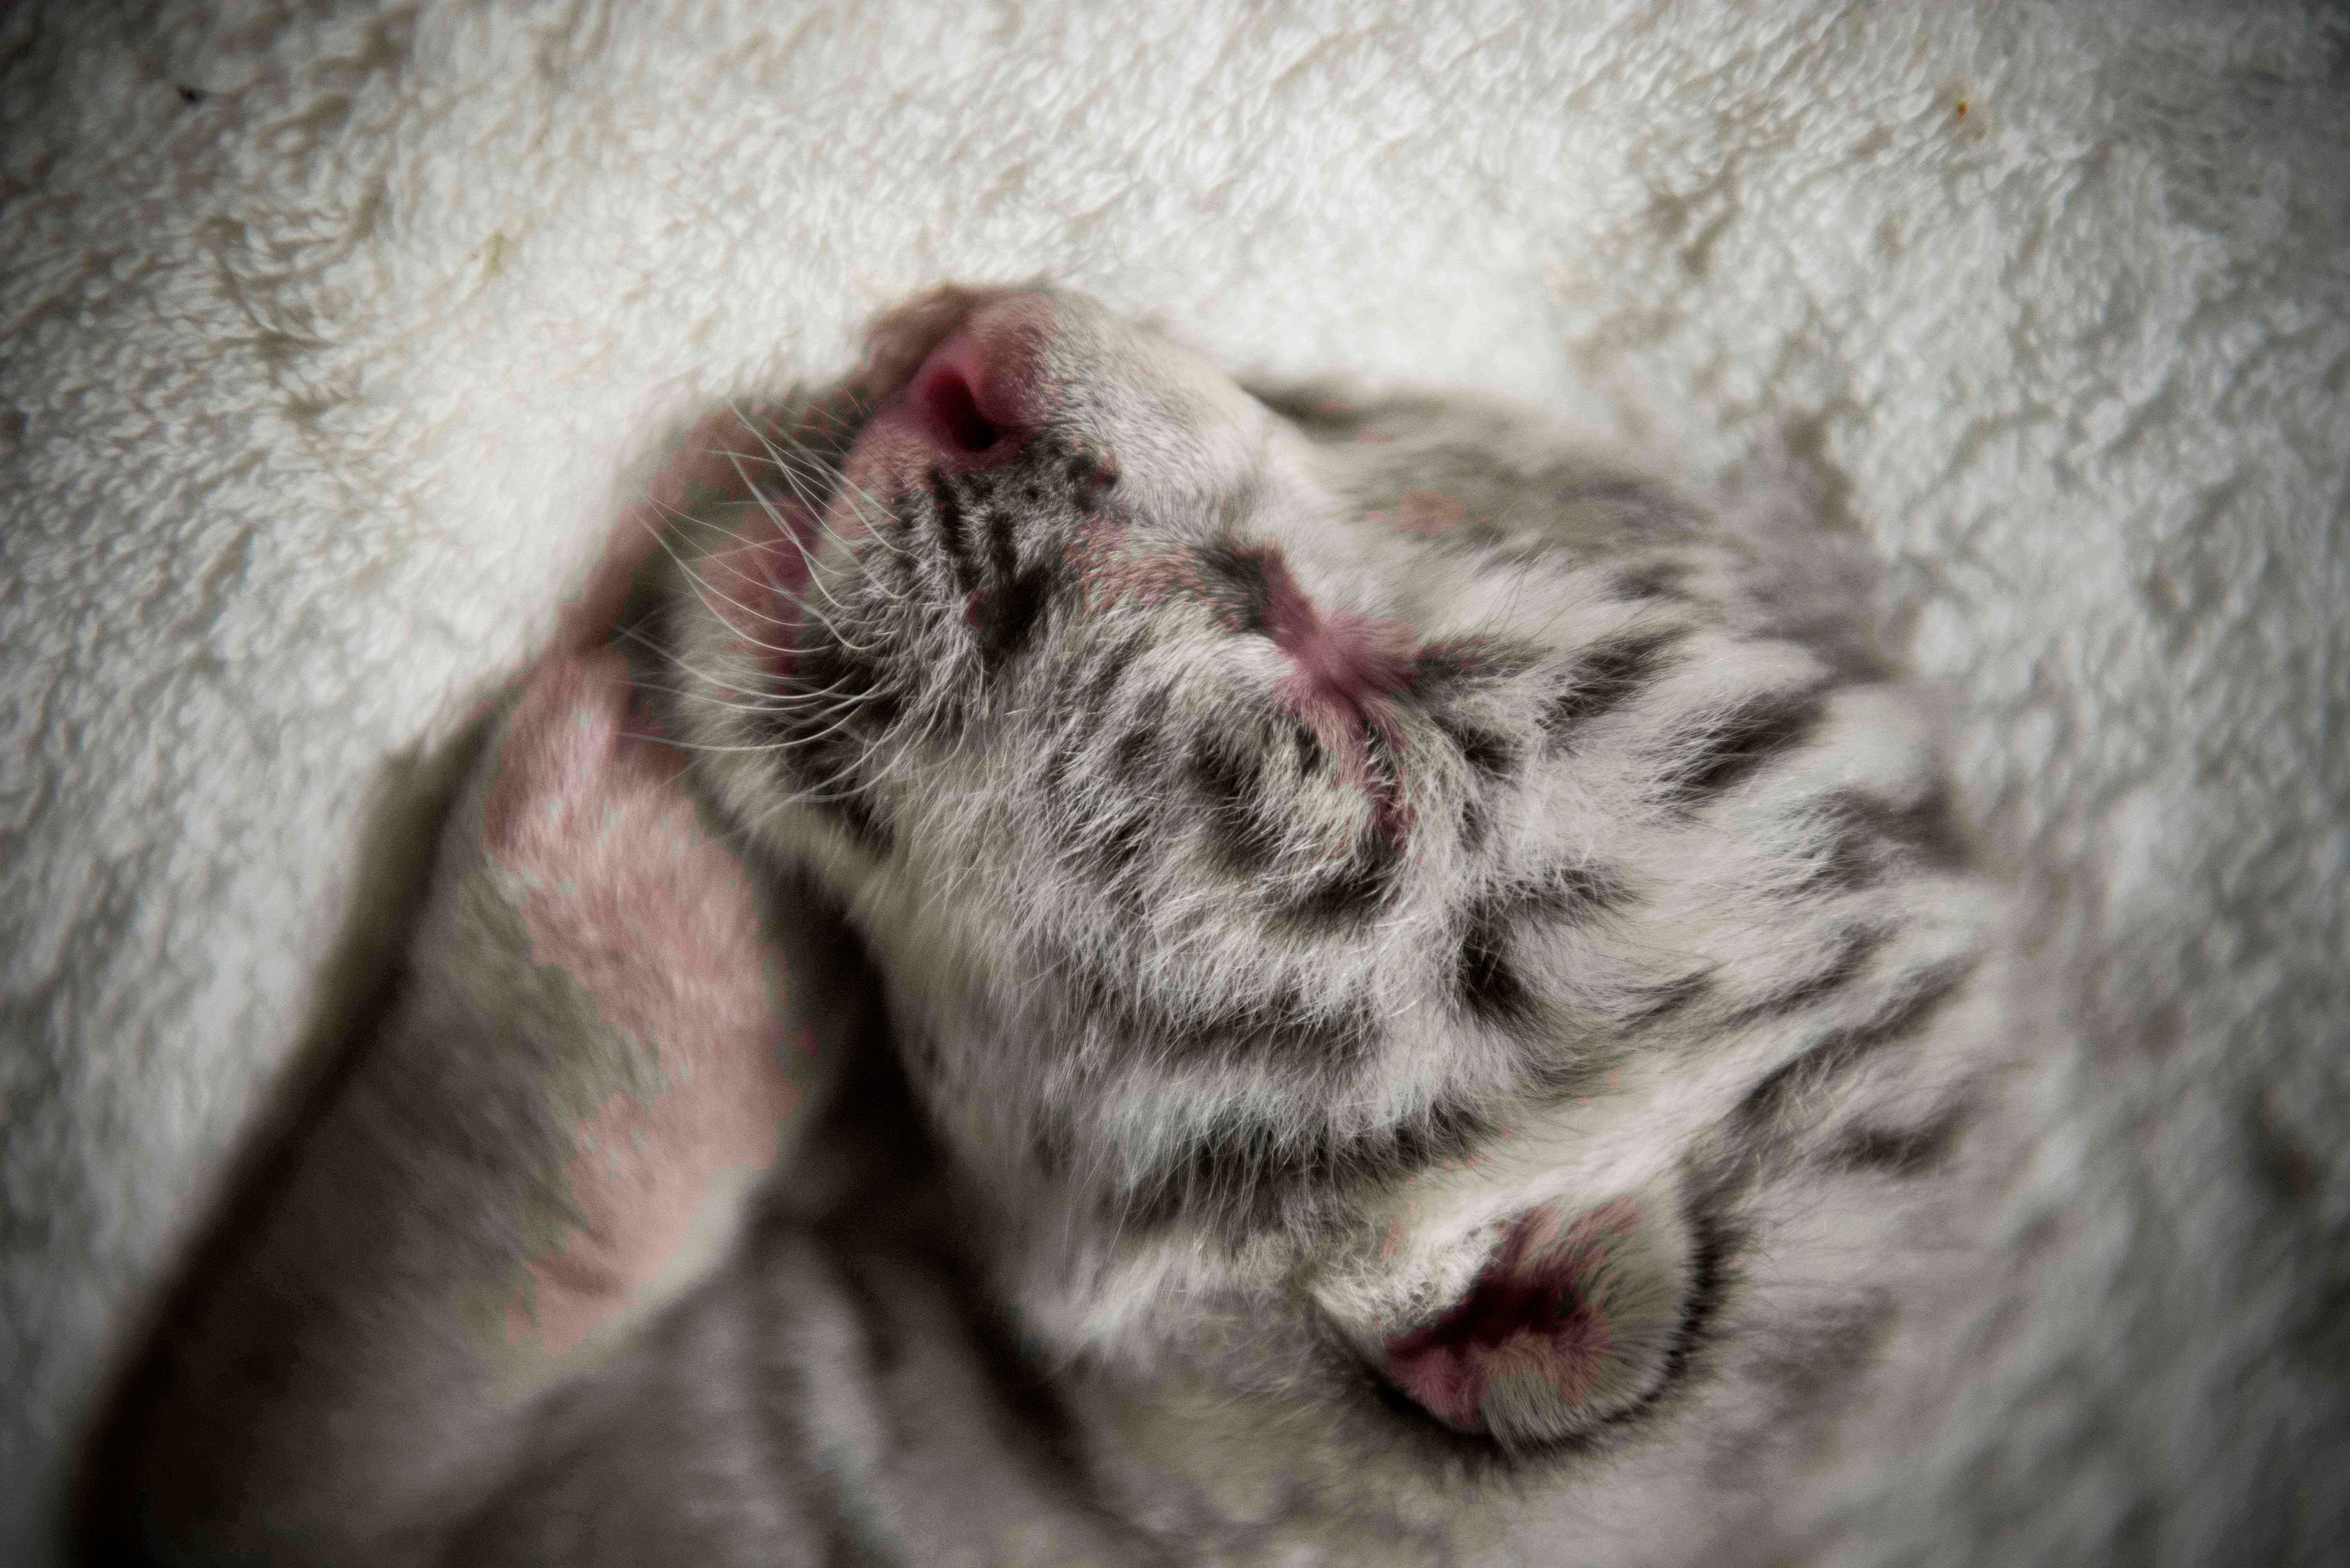 Photo of a newborn white tigercub